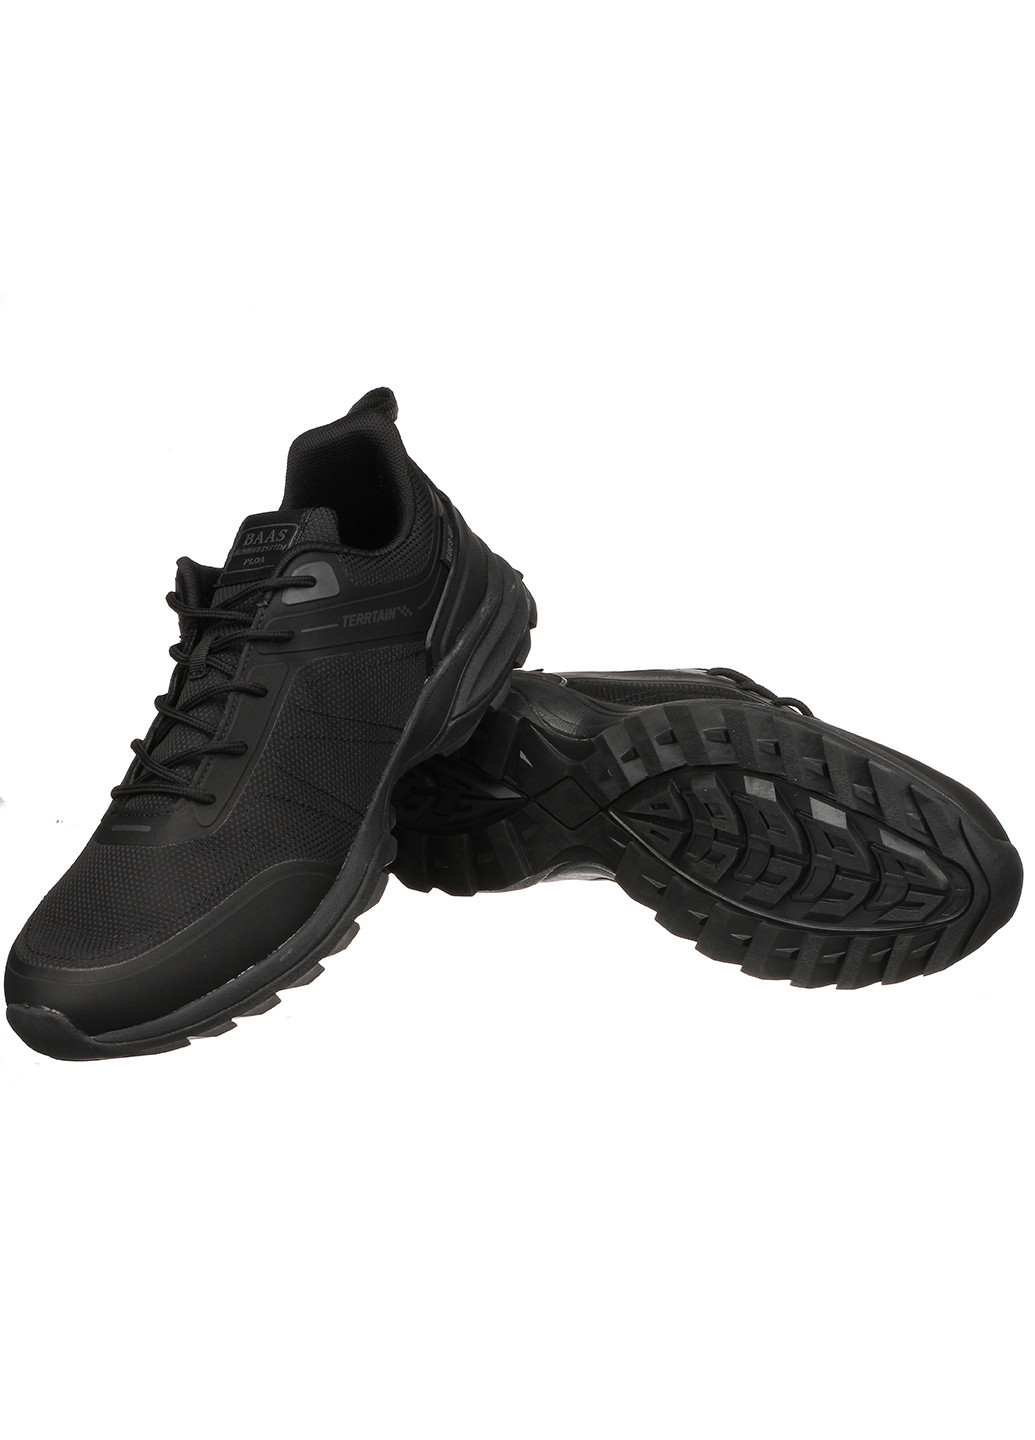 Черные демисезонные мужские кроссовки 7413-11 Baas